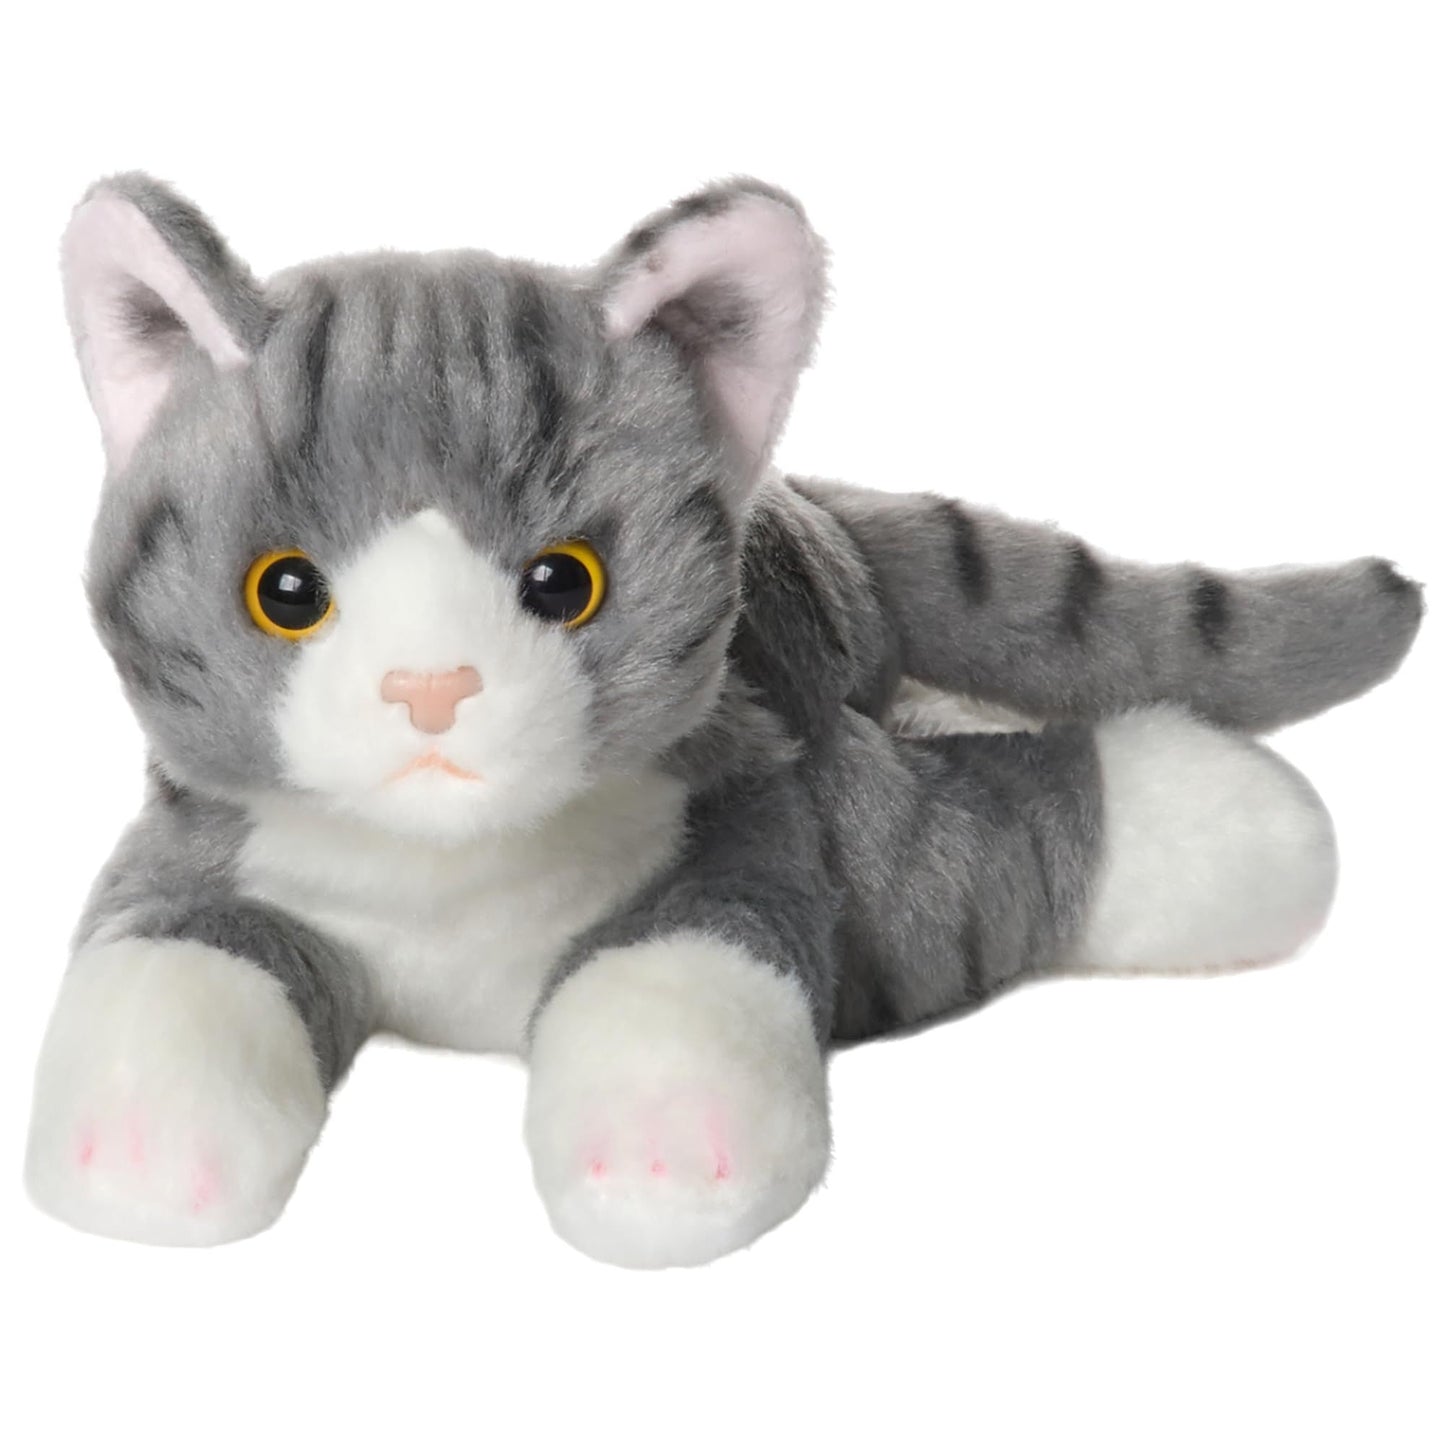 8" Cat Lil’ Socks